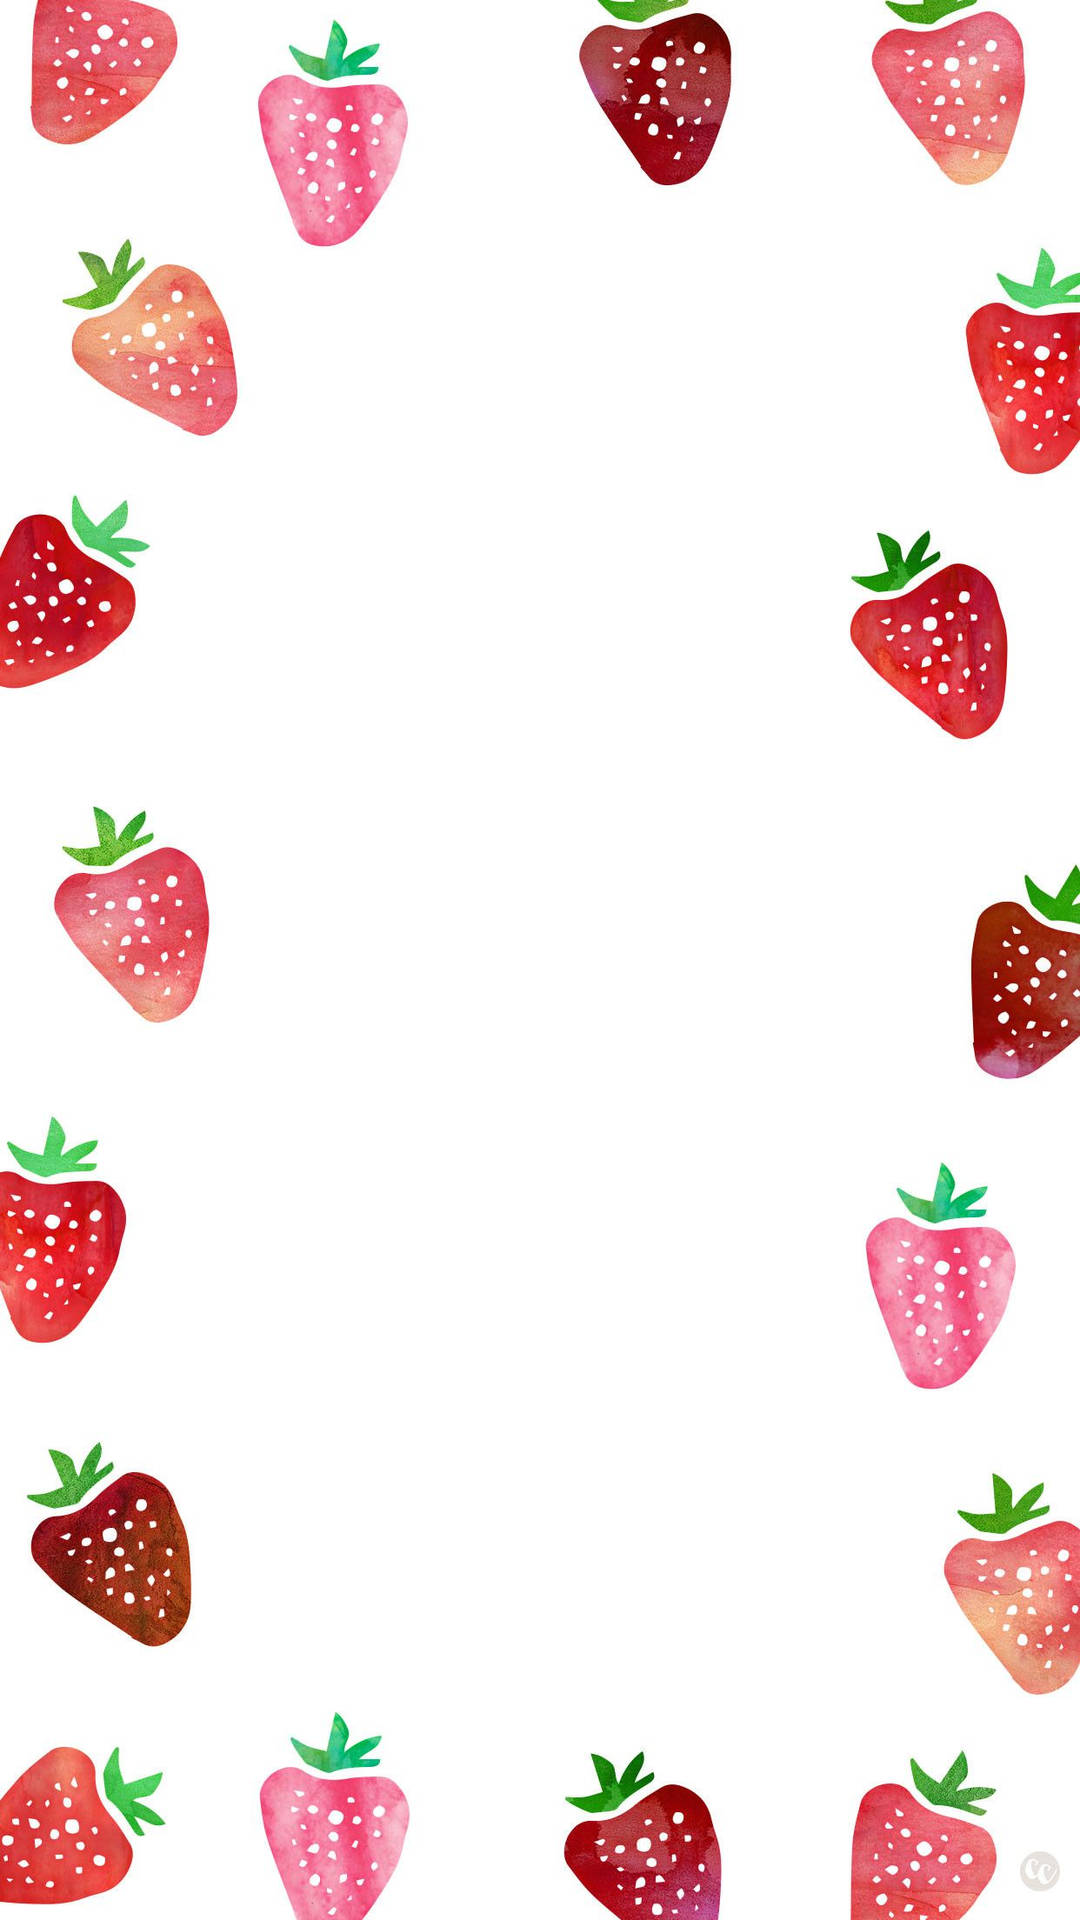 Entzückend,hell Und Süß: Ein Perfektes Bild Der Erdbeer-ästhetik. Wallpaper